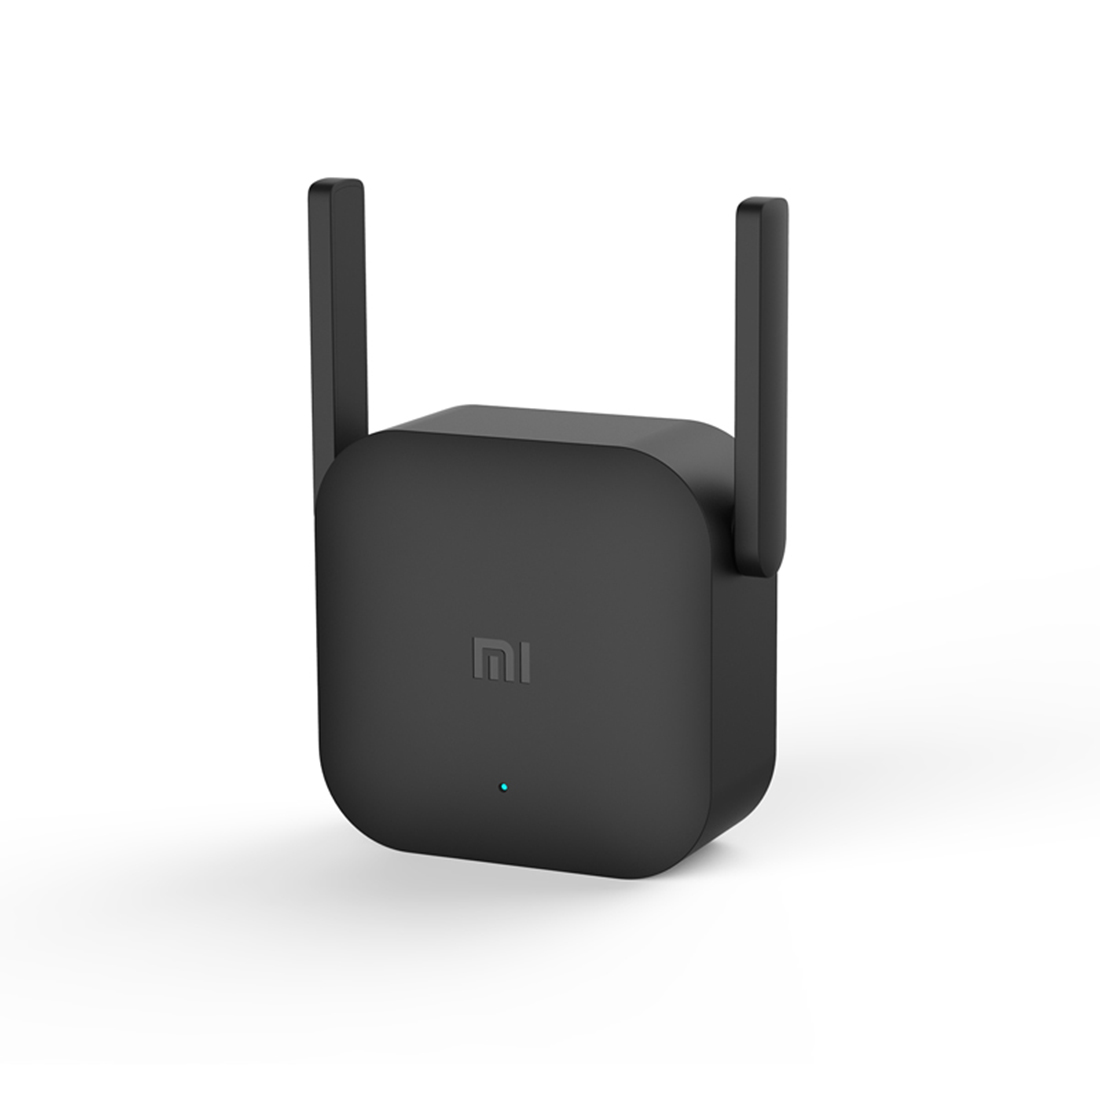 Усилитель Wi-Fi сигнала, Xiaomi, Mi Wi-Fi Range Extender Pro, Ретранслятор Wi-Fi, 802.11b/g/n, 2 Вне